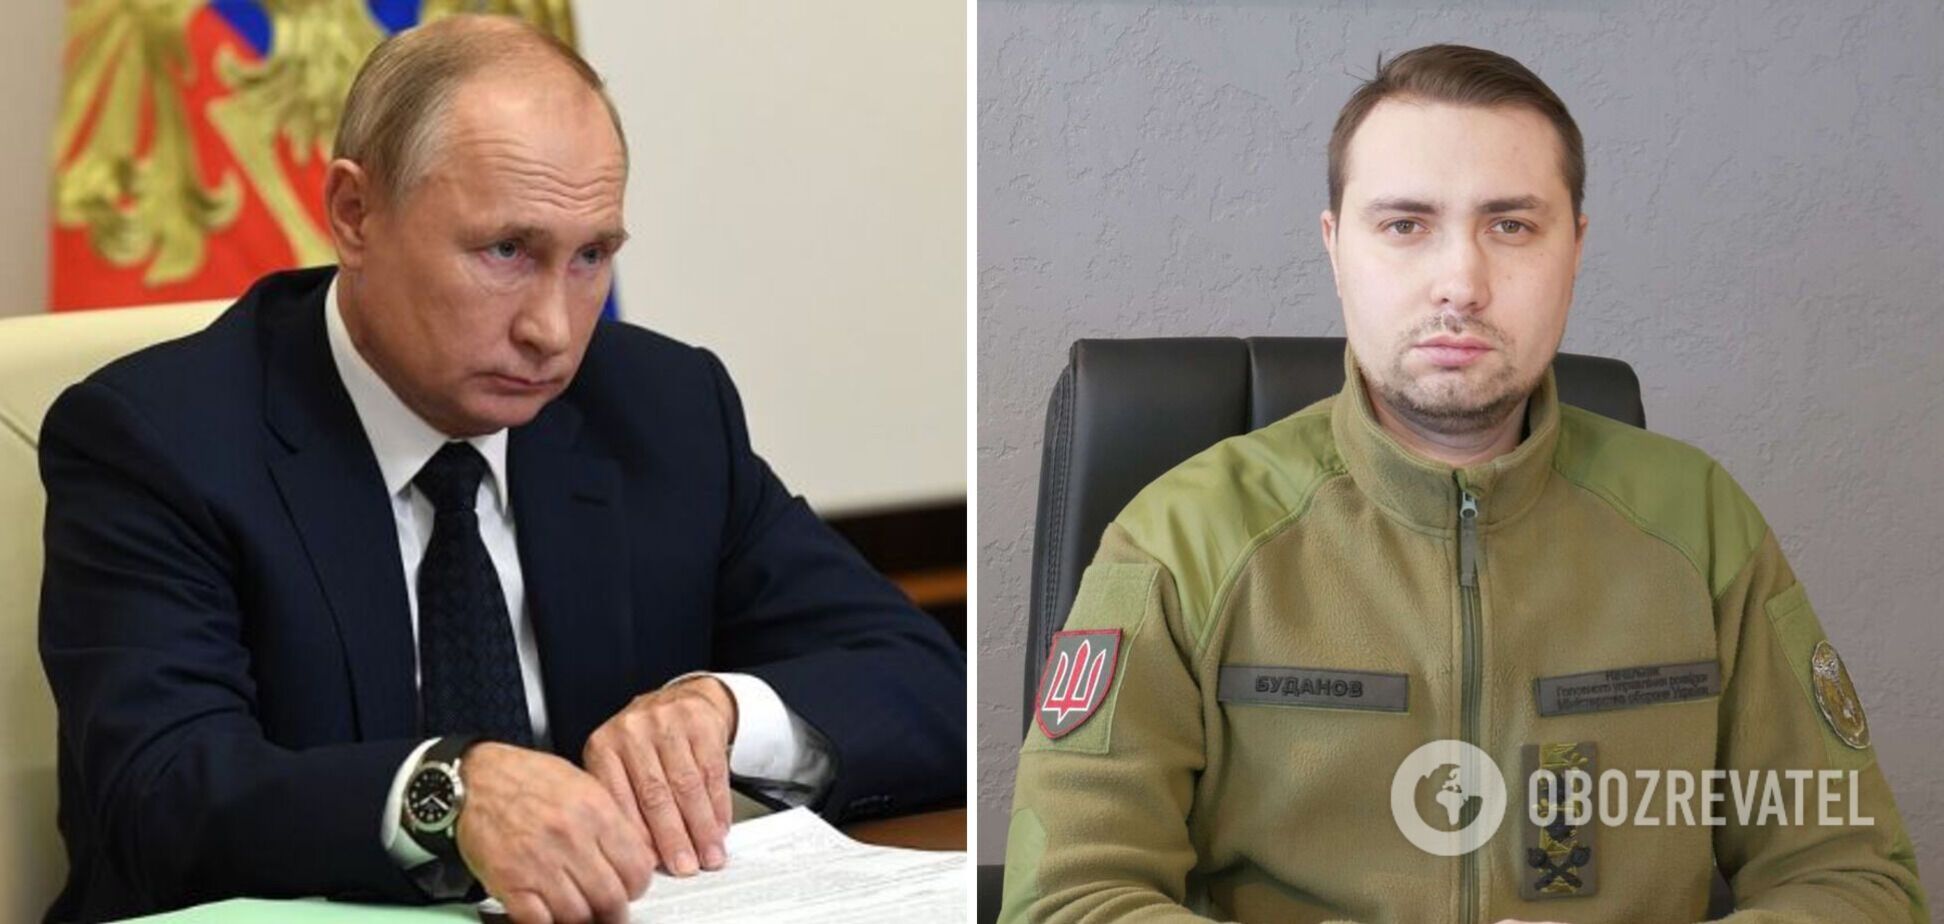 'Это отрытый вопрос, настоящий ли Путин перед нами': Буданов заявил, что глава Кремля неизлечимо болен раком и имеет двойников